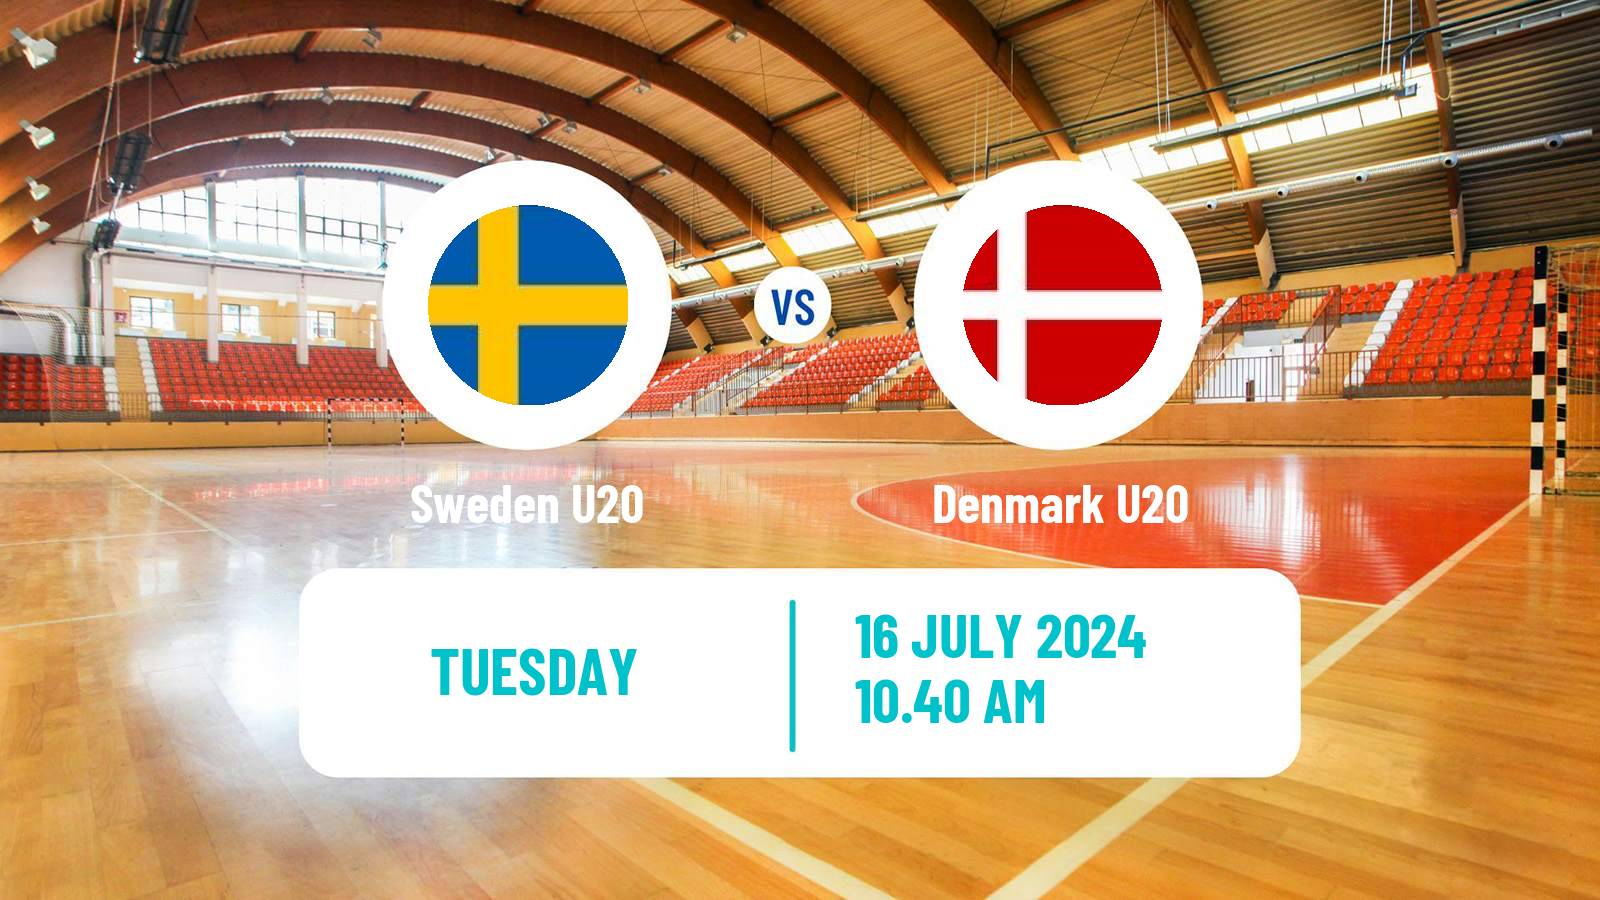 Handball European Championship U20 Handball Sweden U20 - Denmark U20